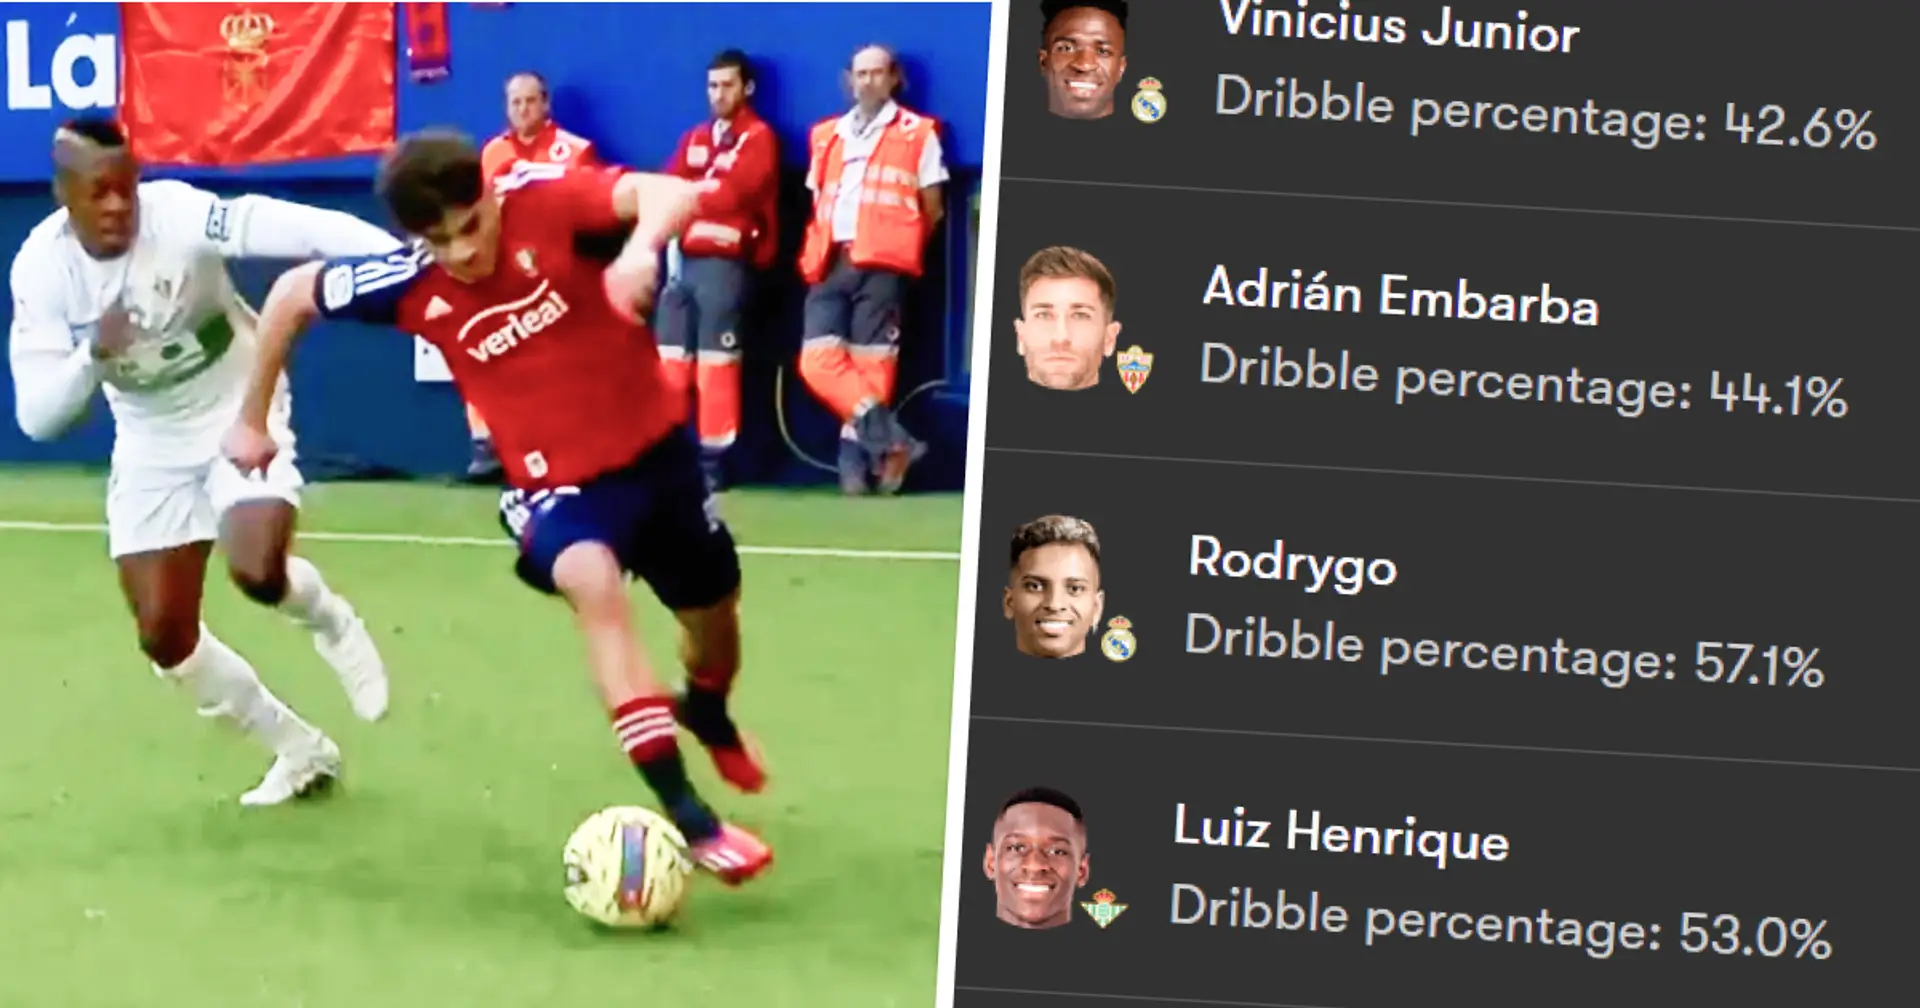 La Liga best dribblers unveiled – Abde 1st, Vinicius 3rd